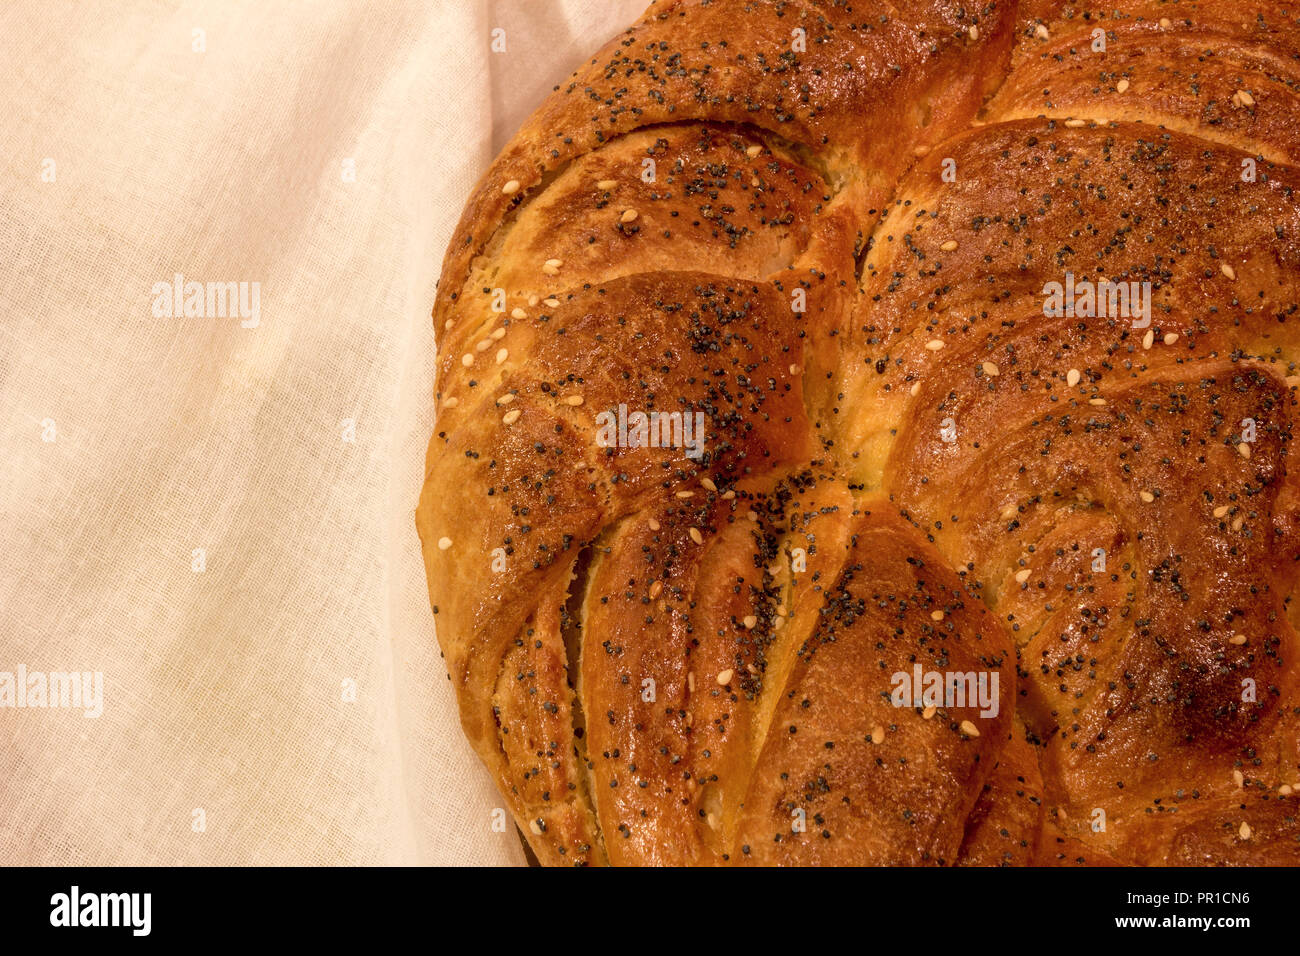 Ein Teil der frisch gebackenen runden Laib Brot auf einem weißen Tuch Stockfoto